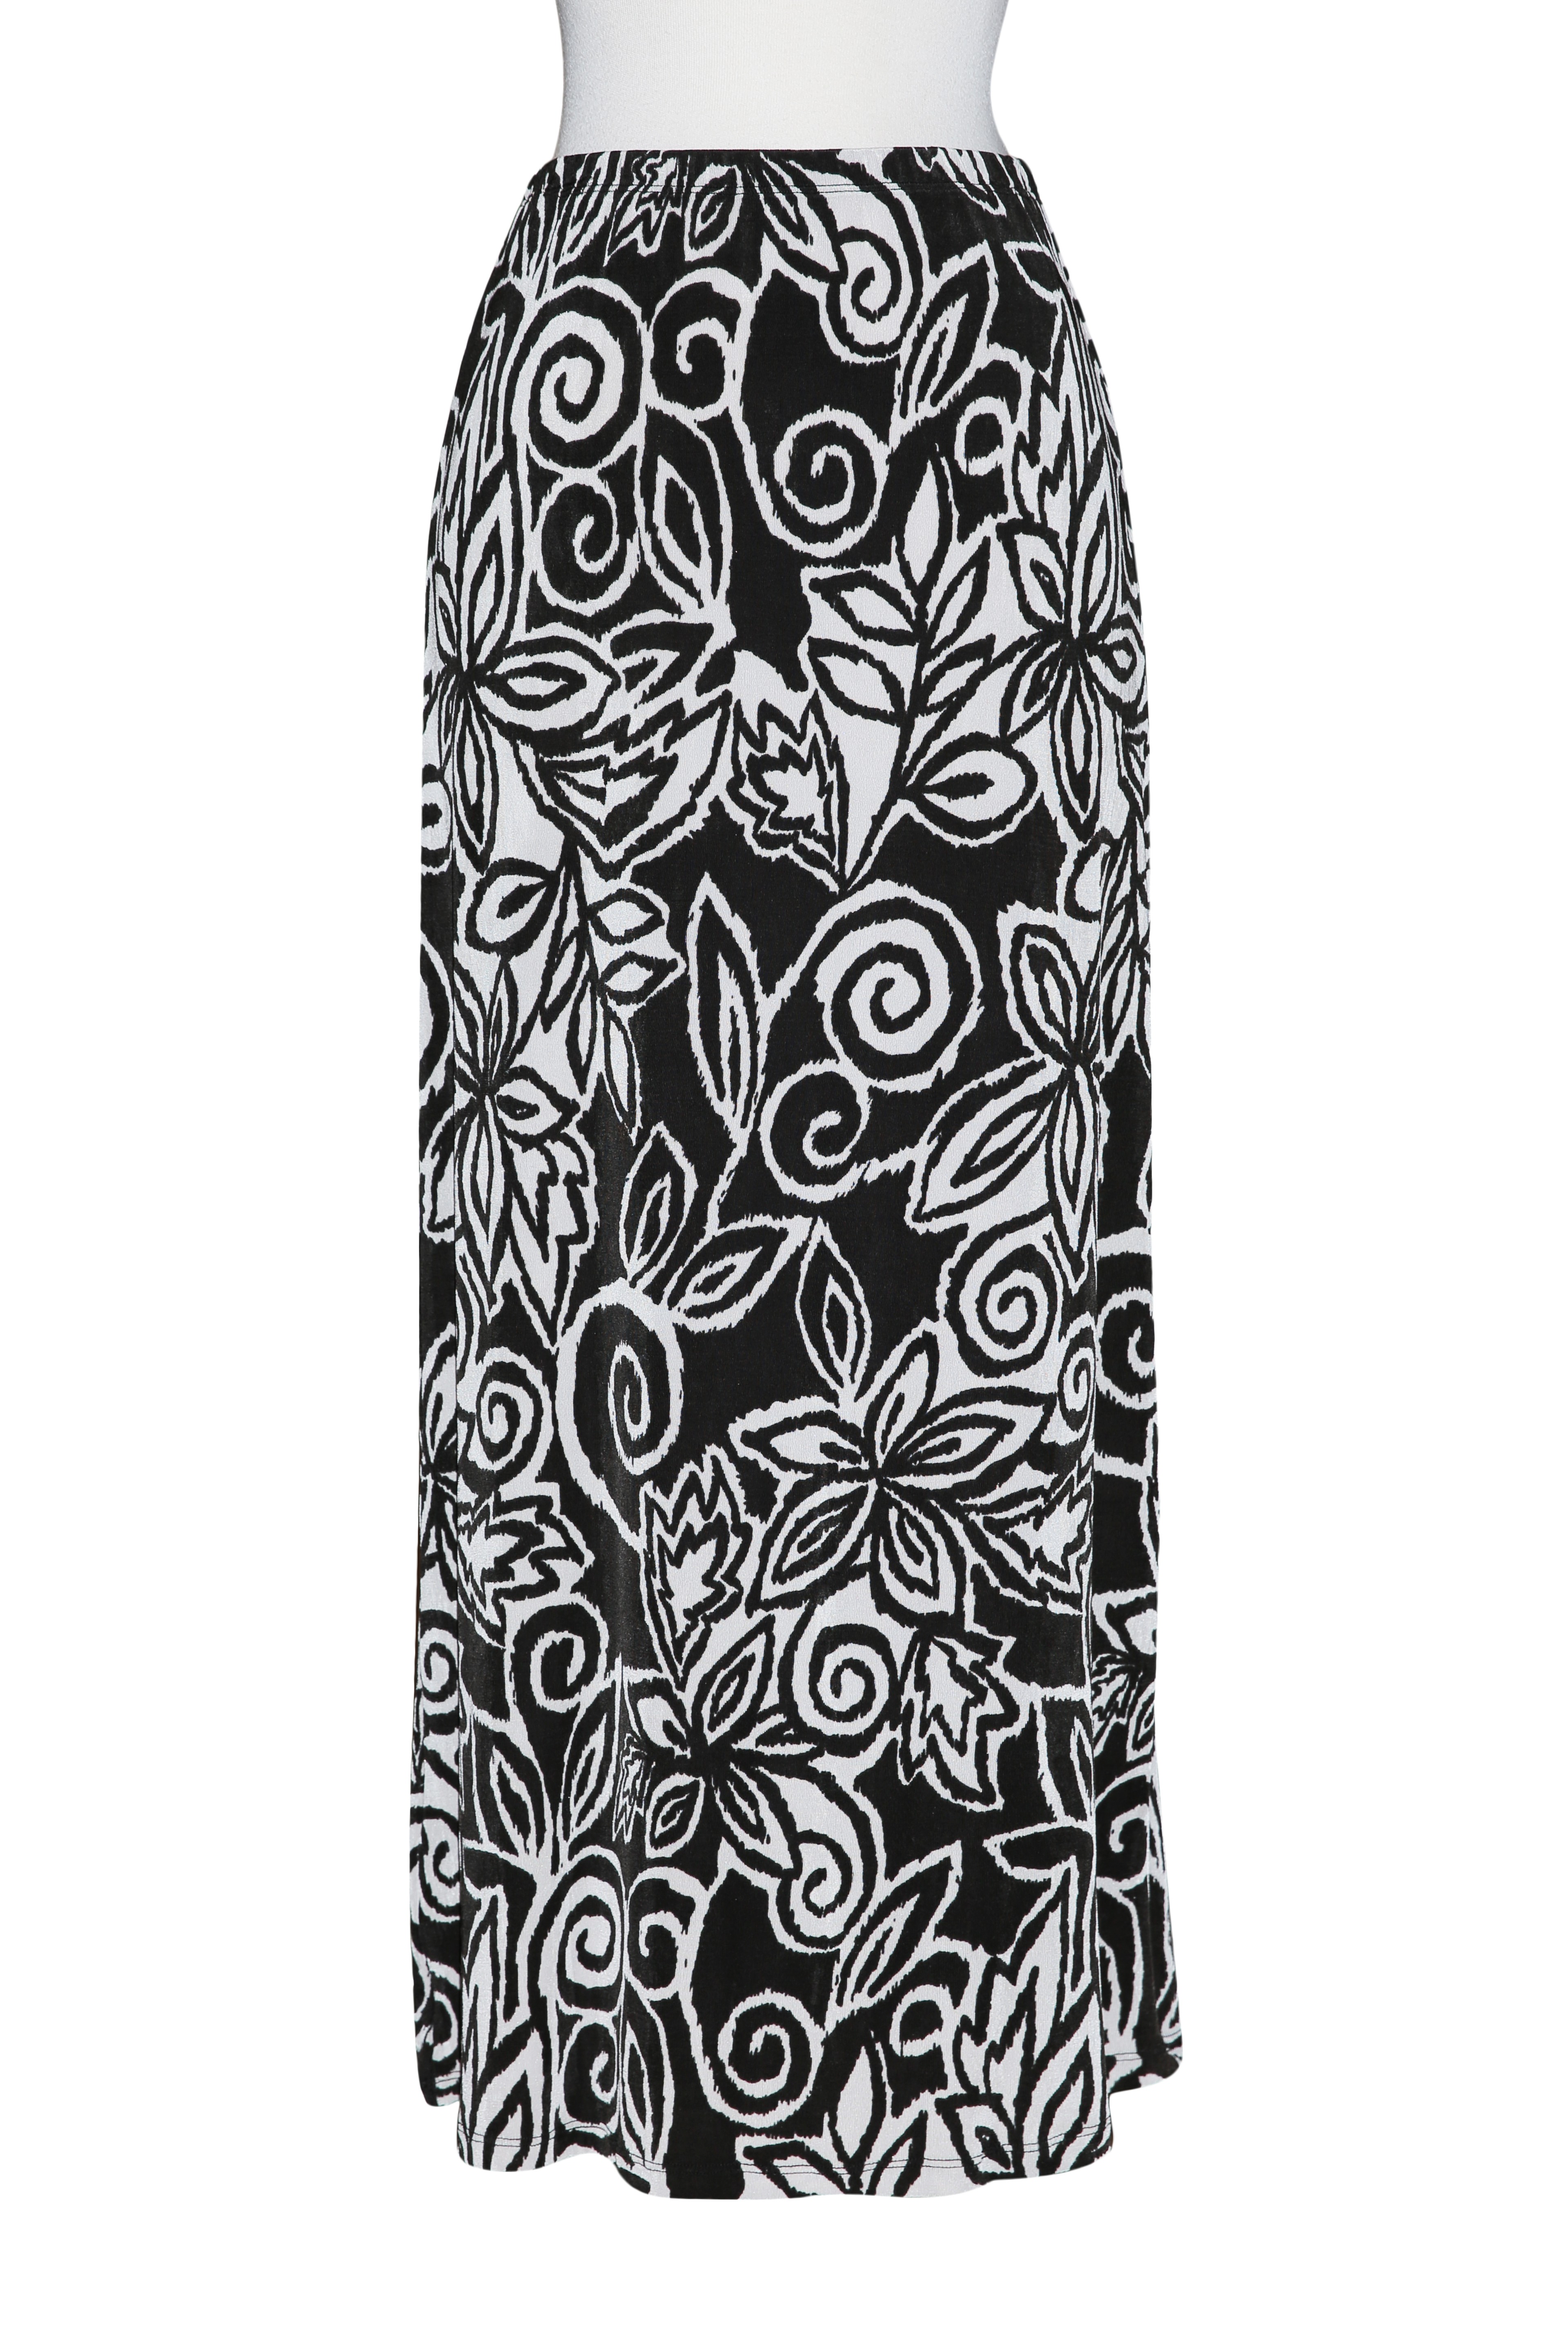 Black & White Floral Slinky Skirt